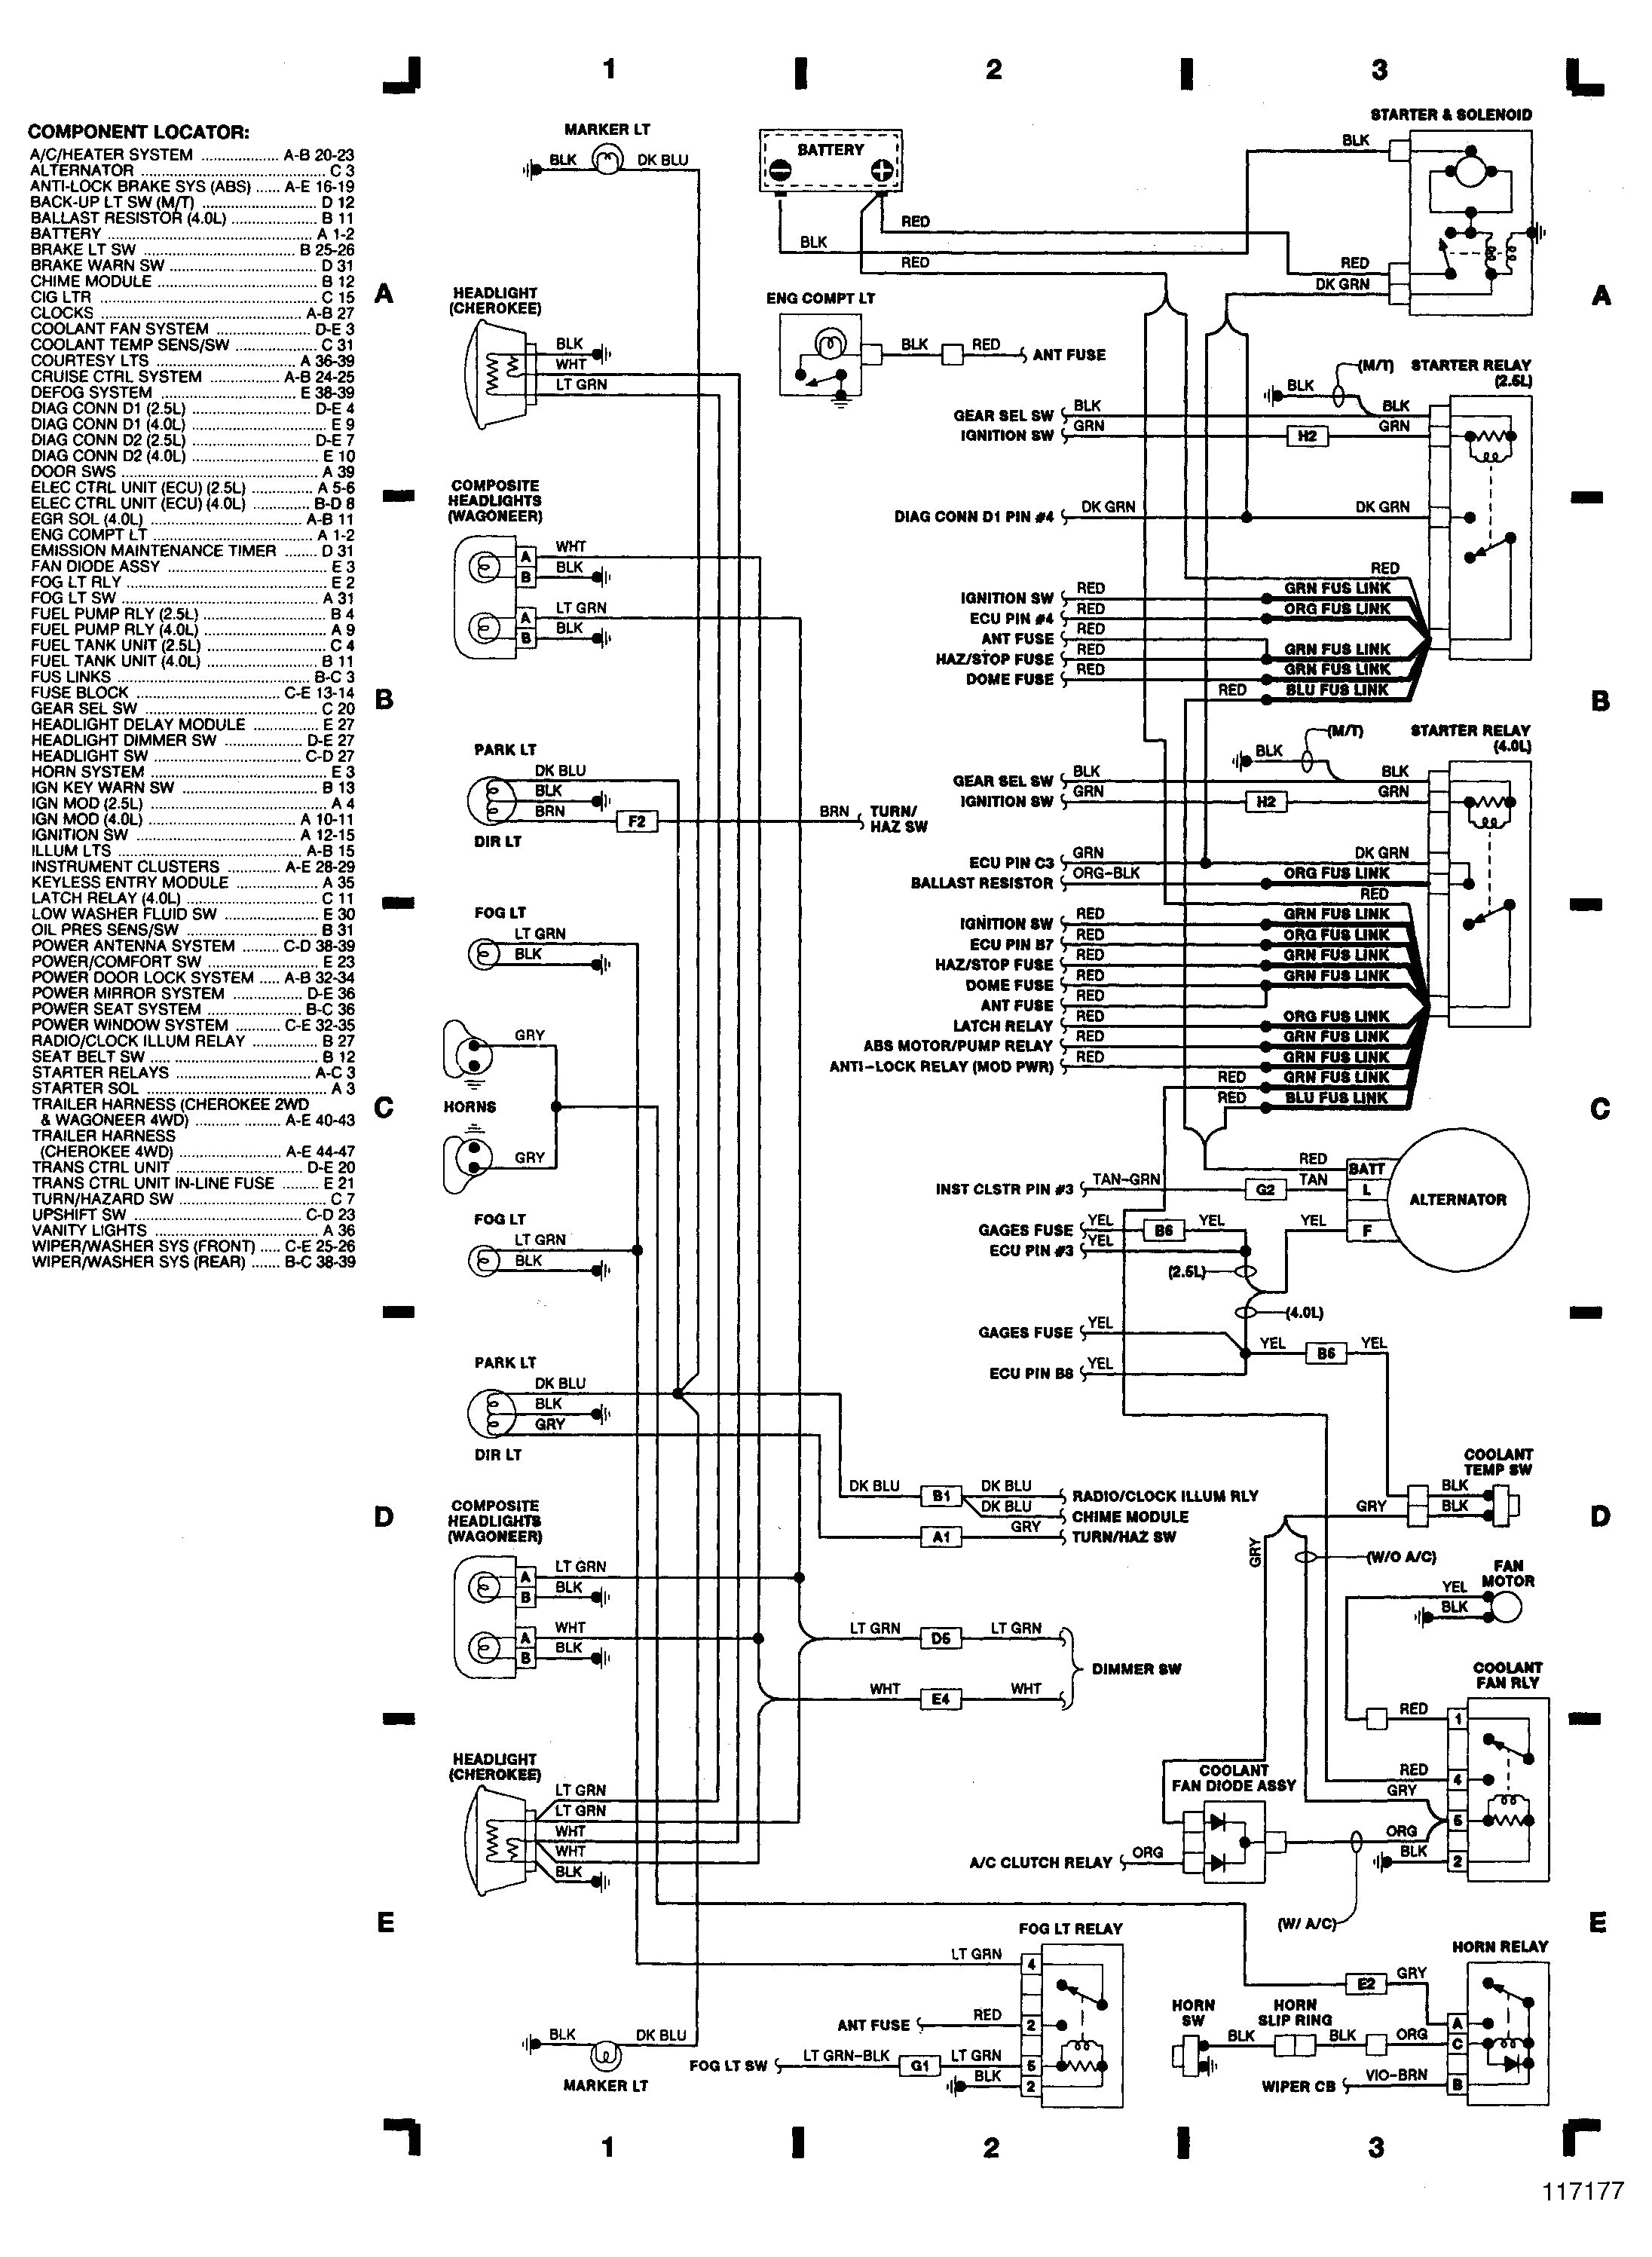 laredo wiring diagram wiring diagram img 1990 jeep cherokee laredo wiring diagram 1997 jeep grand cherokee